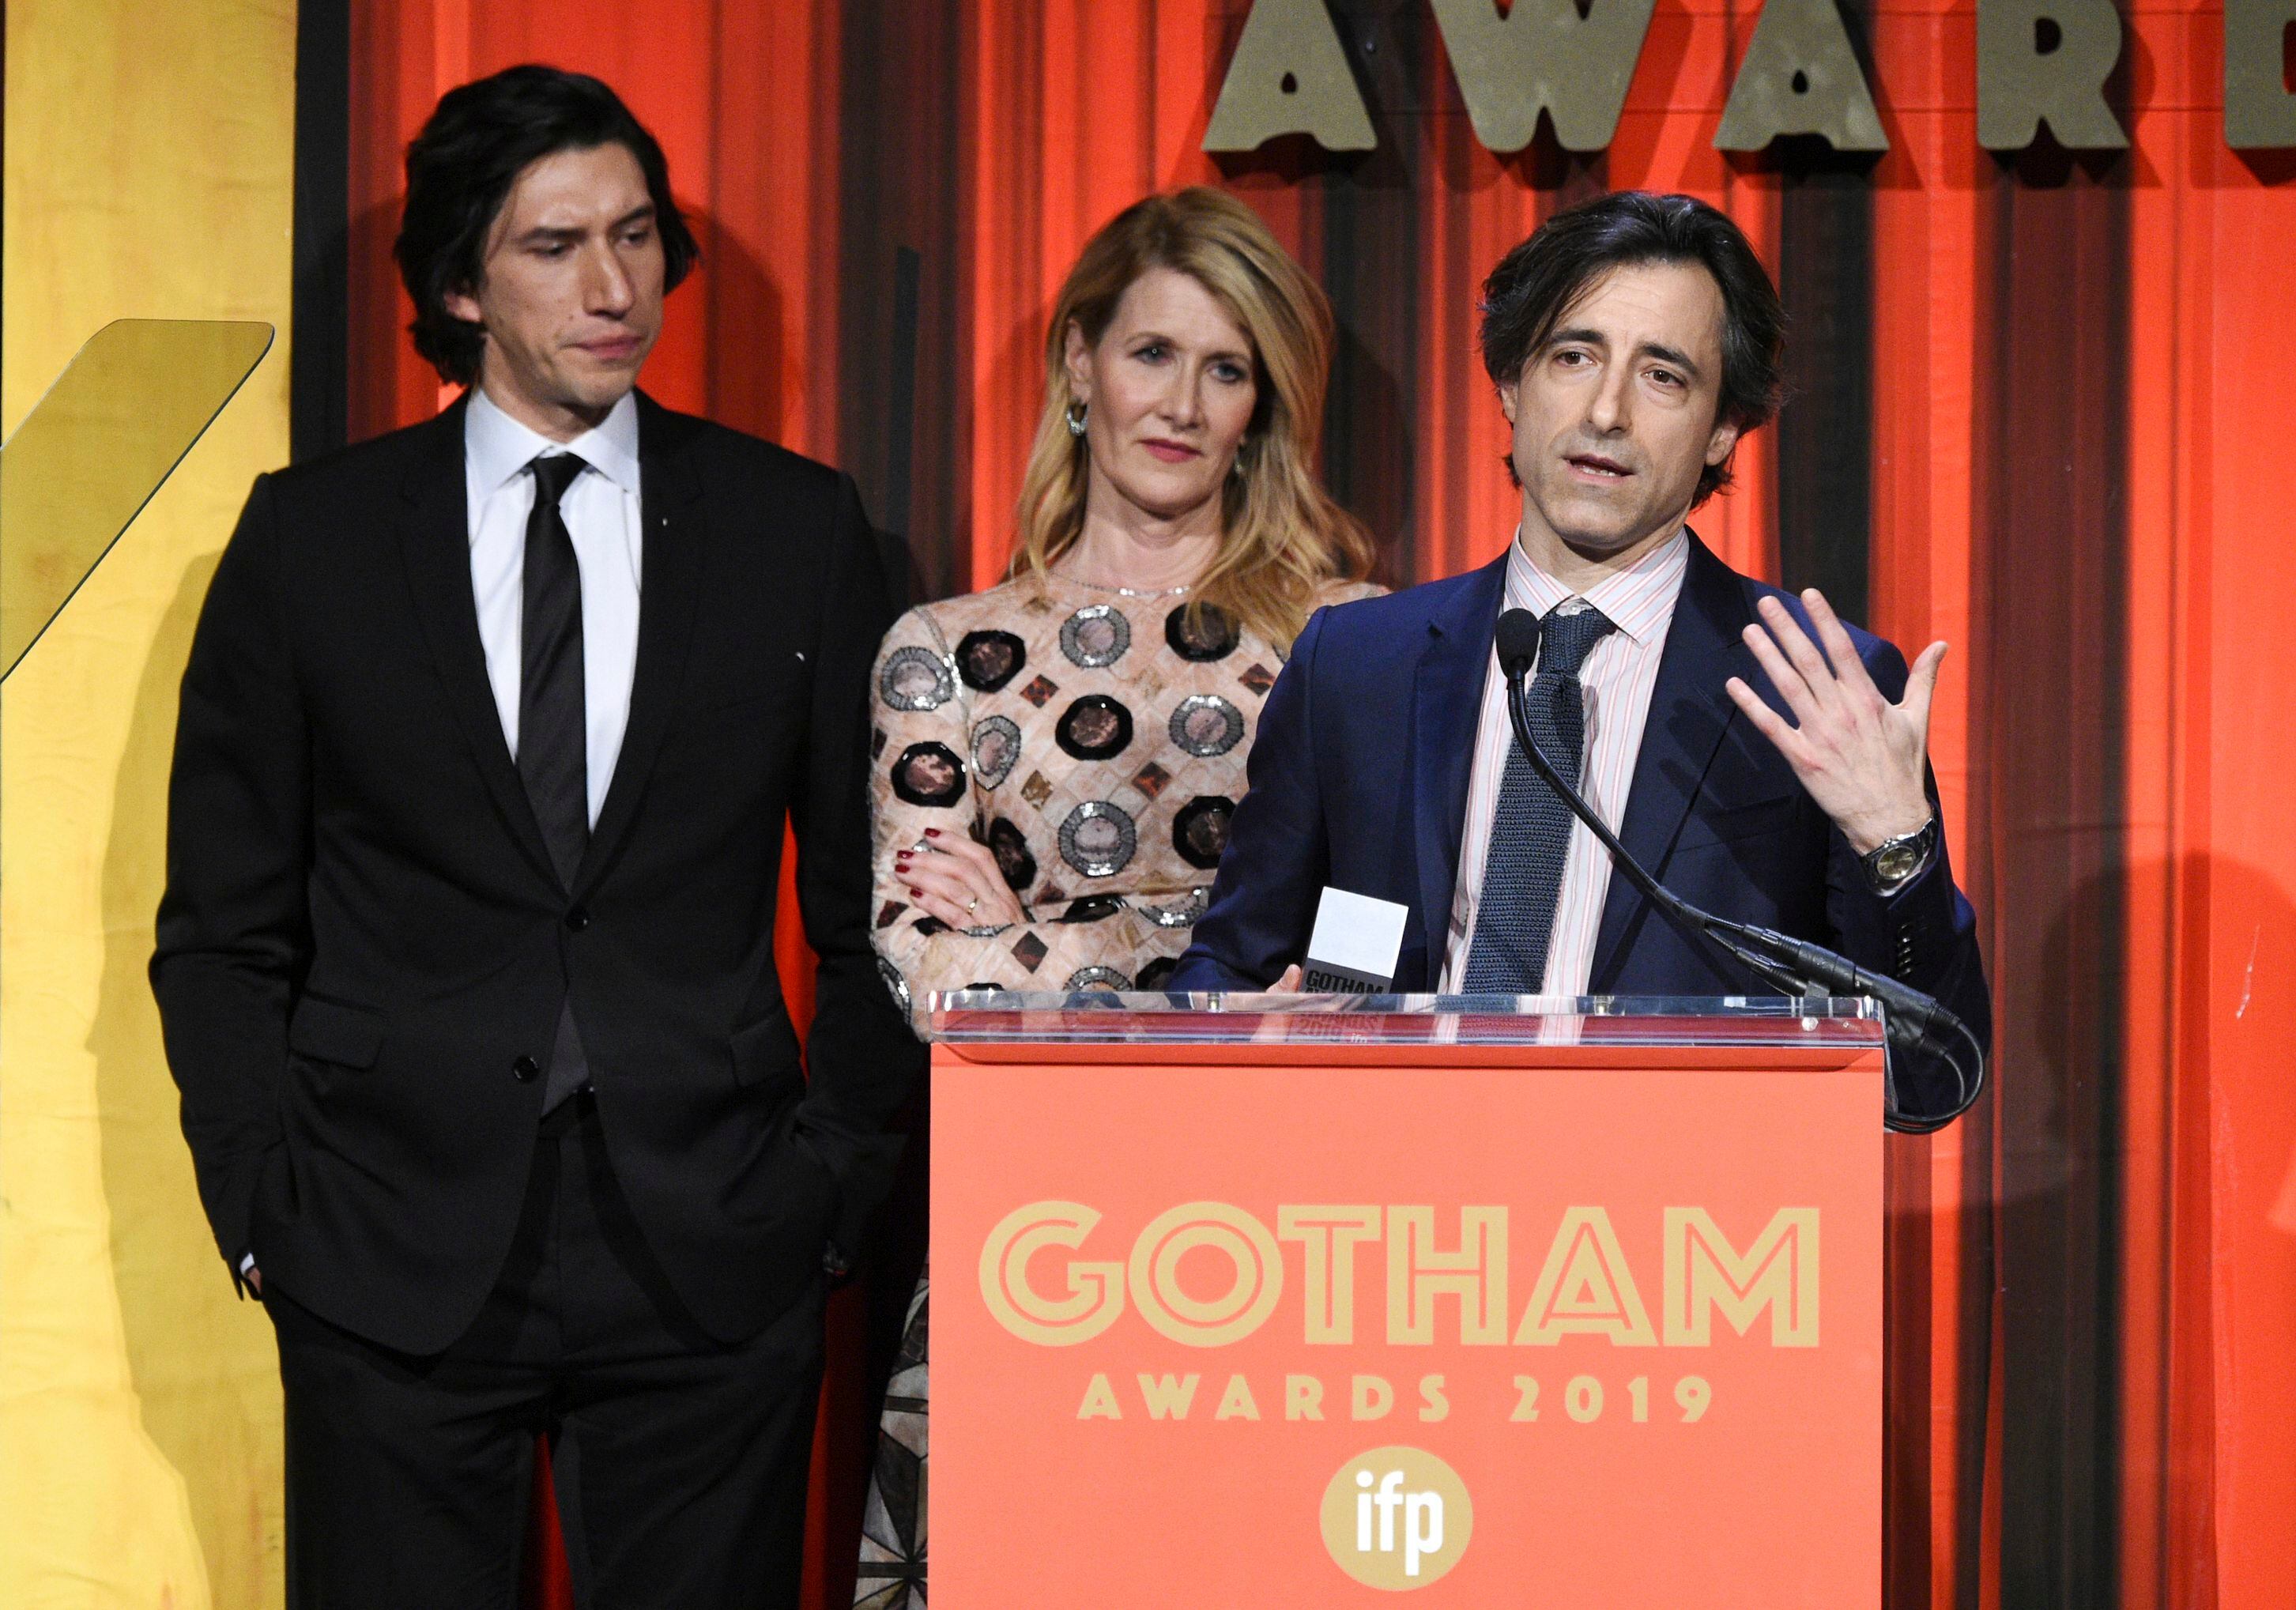 El cineasta Noah Baumbach, a la derecha, recibe el premio Gotham al mejor largometraje por "Marriage Story" en compañía de los actores Adam Driver y Laura Dern, at el lunes 2 de diciembre del 2019 en Nueva York. (Foto por Evan Agostini/Invision/AP)